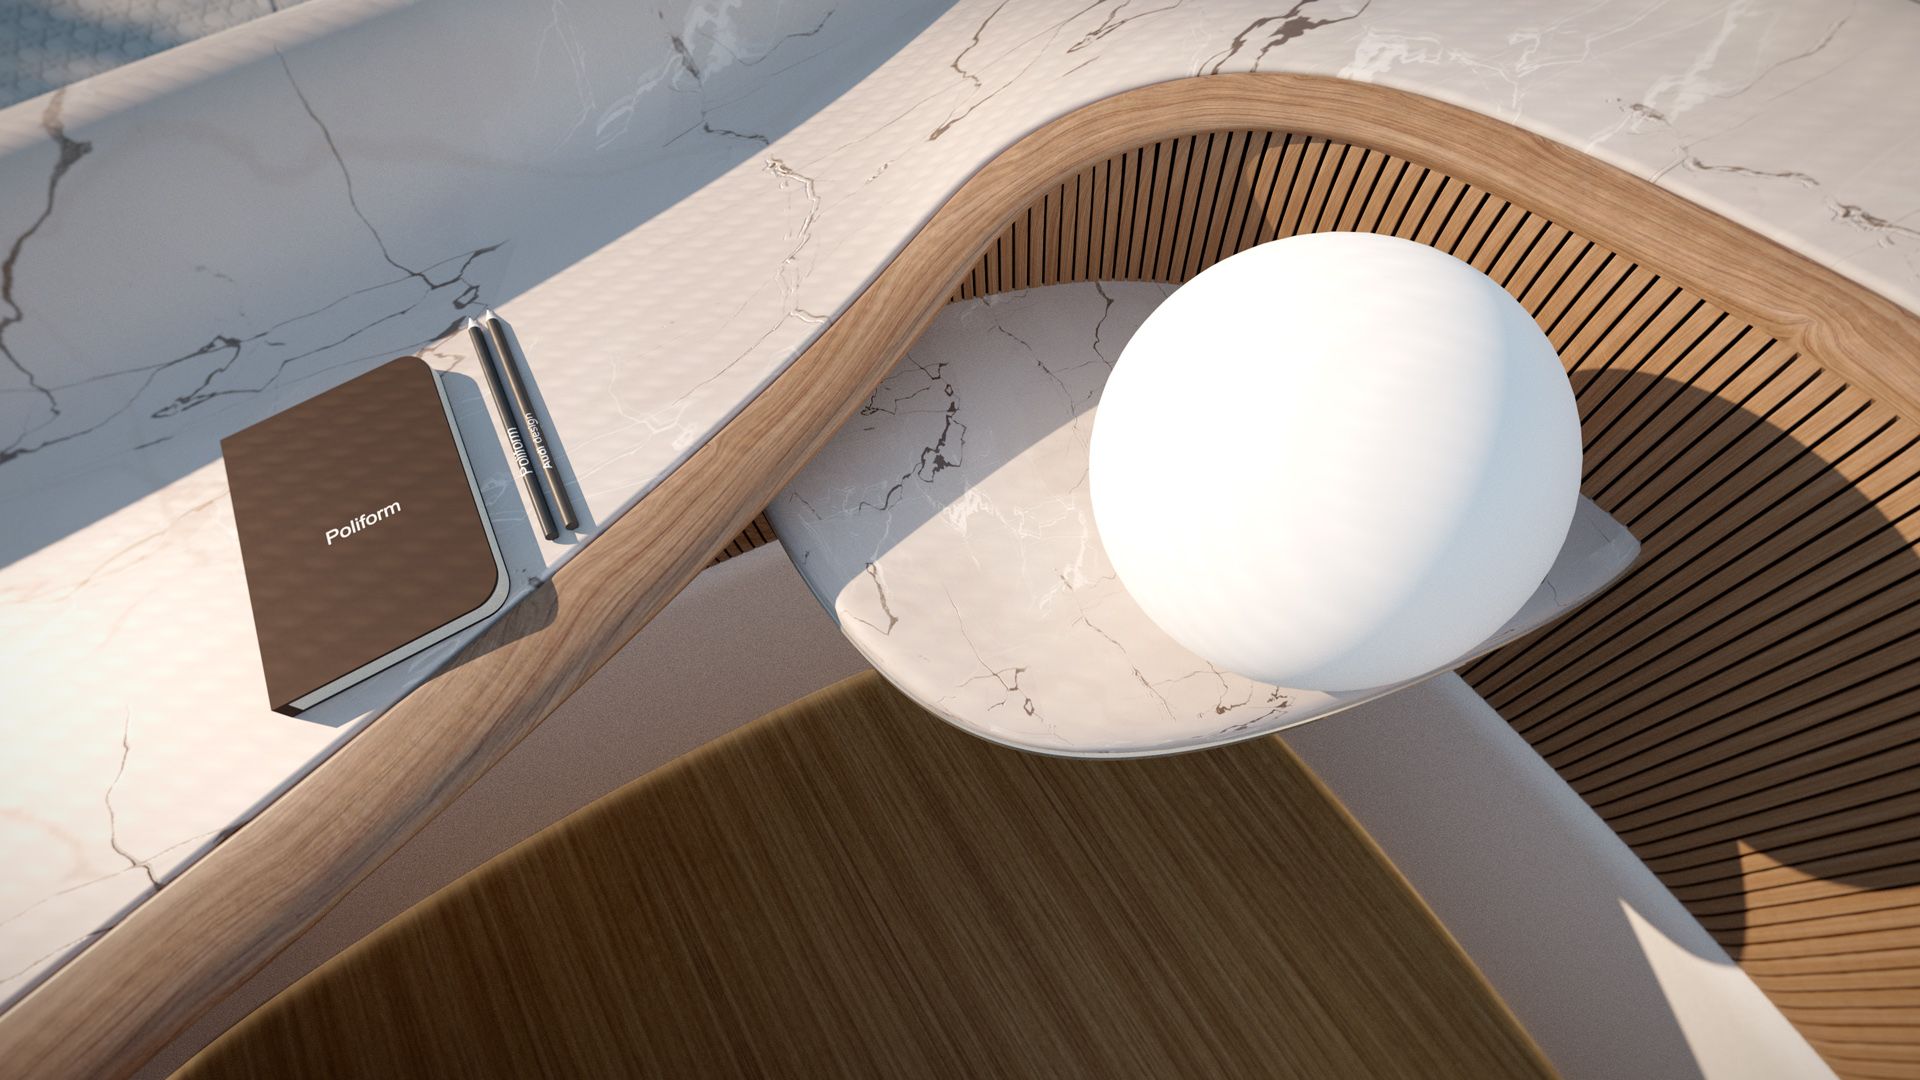 Auf einem Tisch im Interieur-Entwurf von Poliform für den Audi urbansphere concept liegt ein Notizblock mit einem Stift und eine runde Lampe.